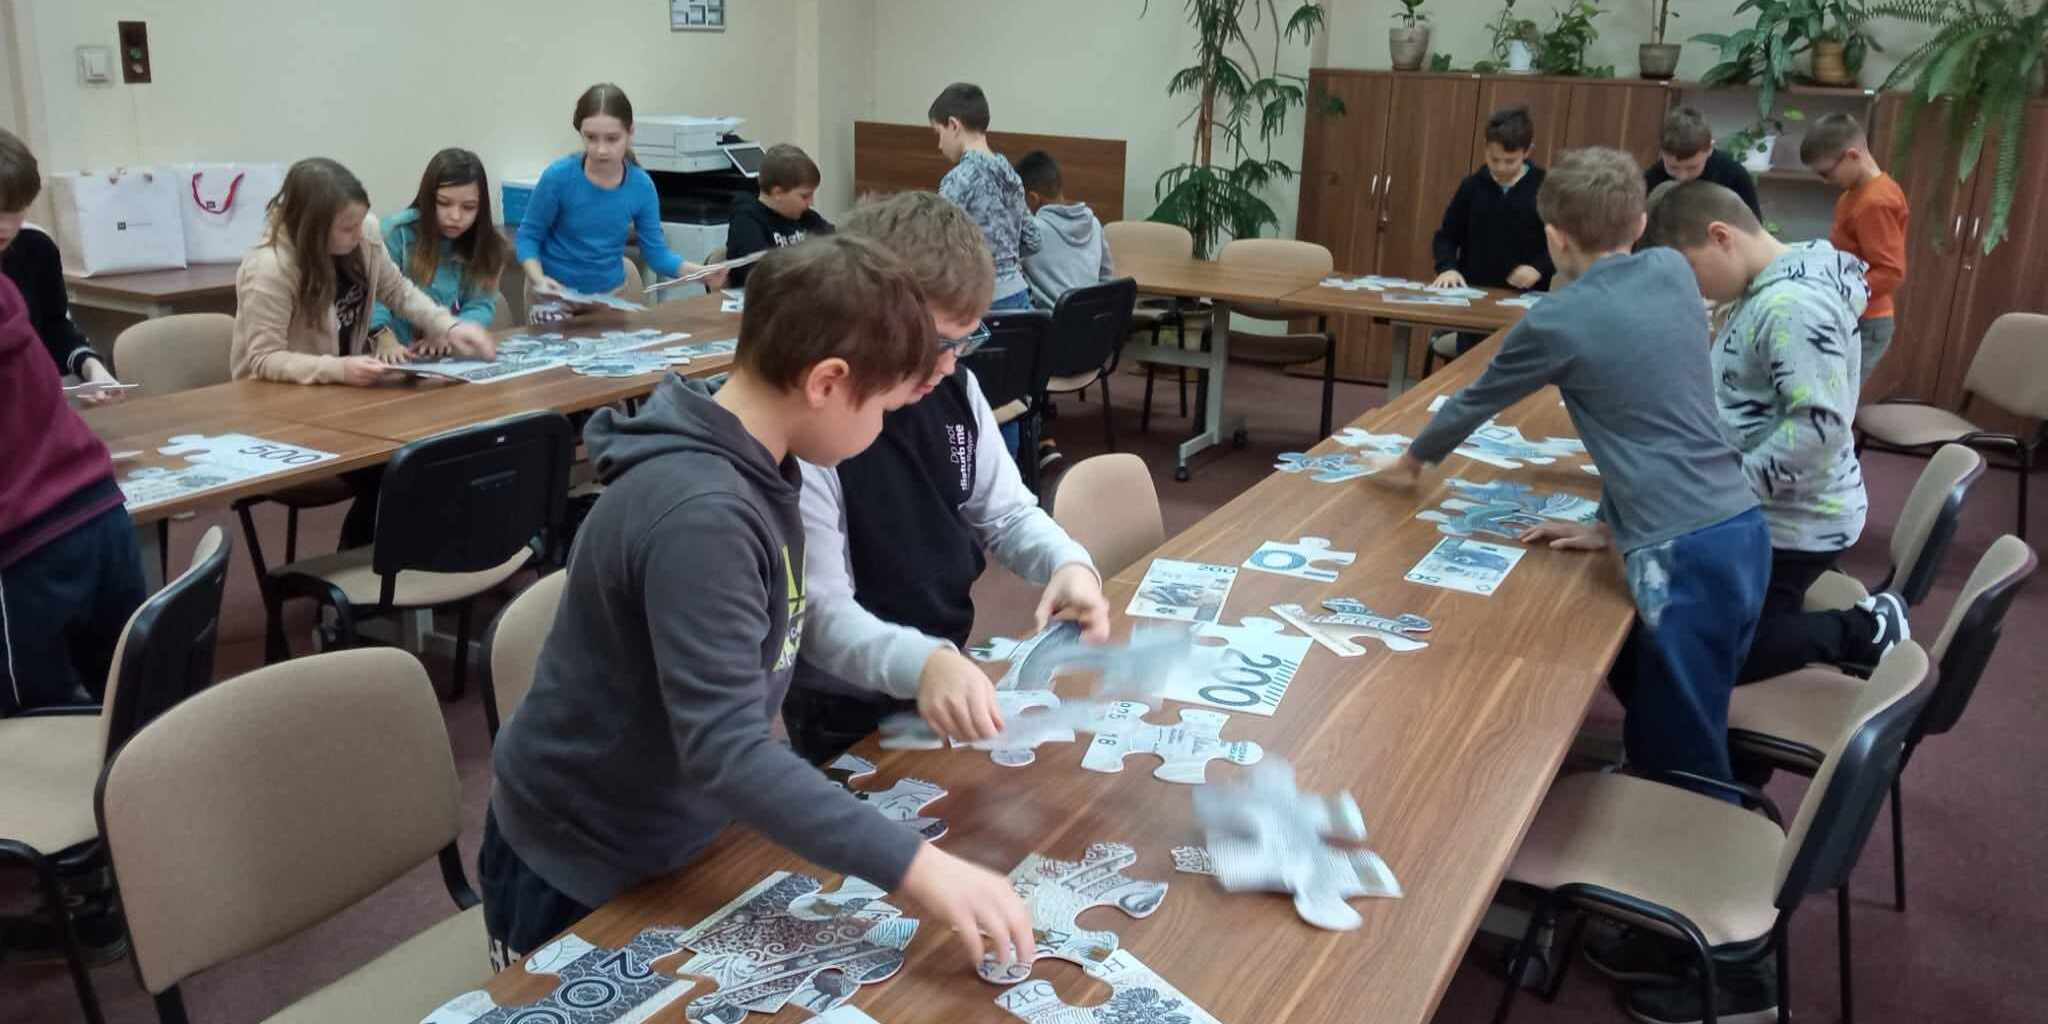 Uczniowie biorą udział w zajęciach. Układają duże puzzle banknotów